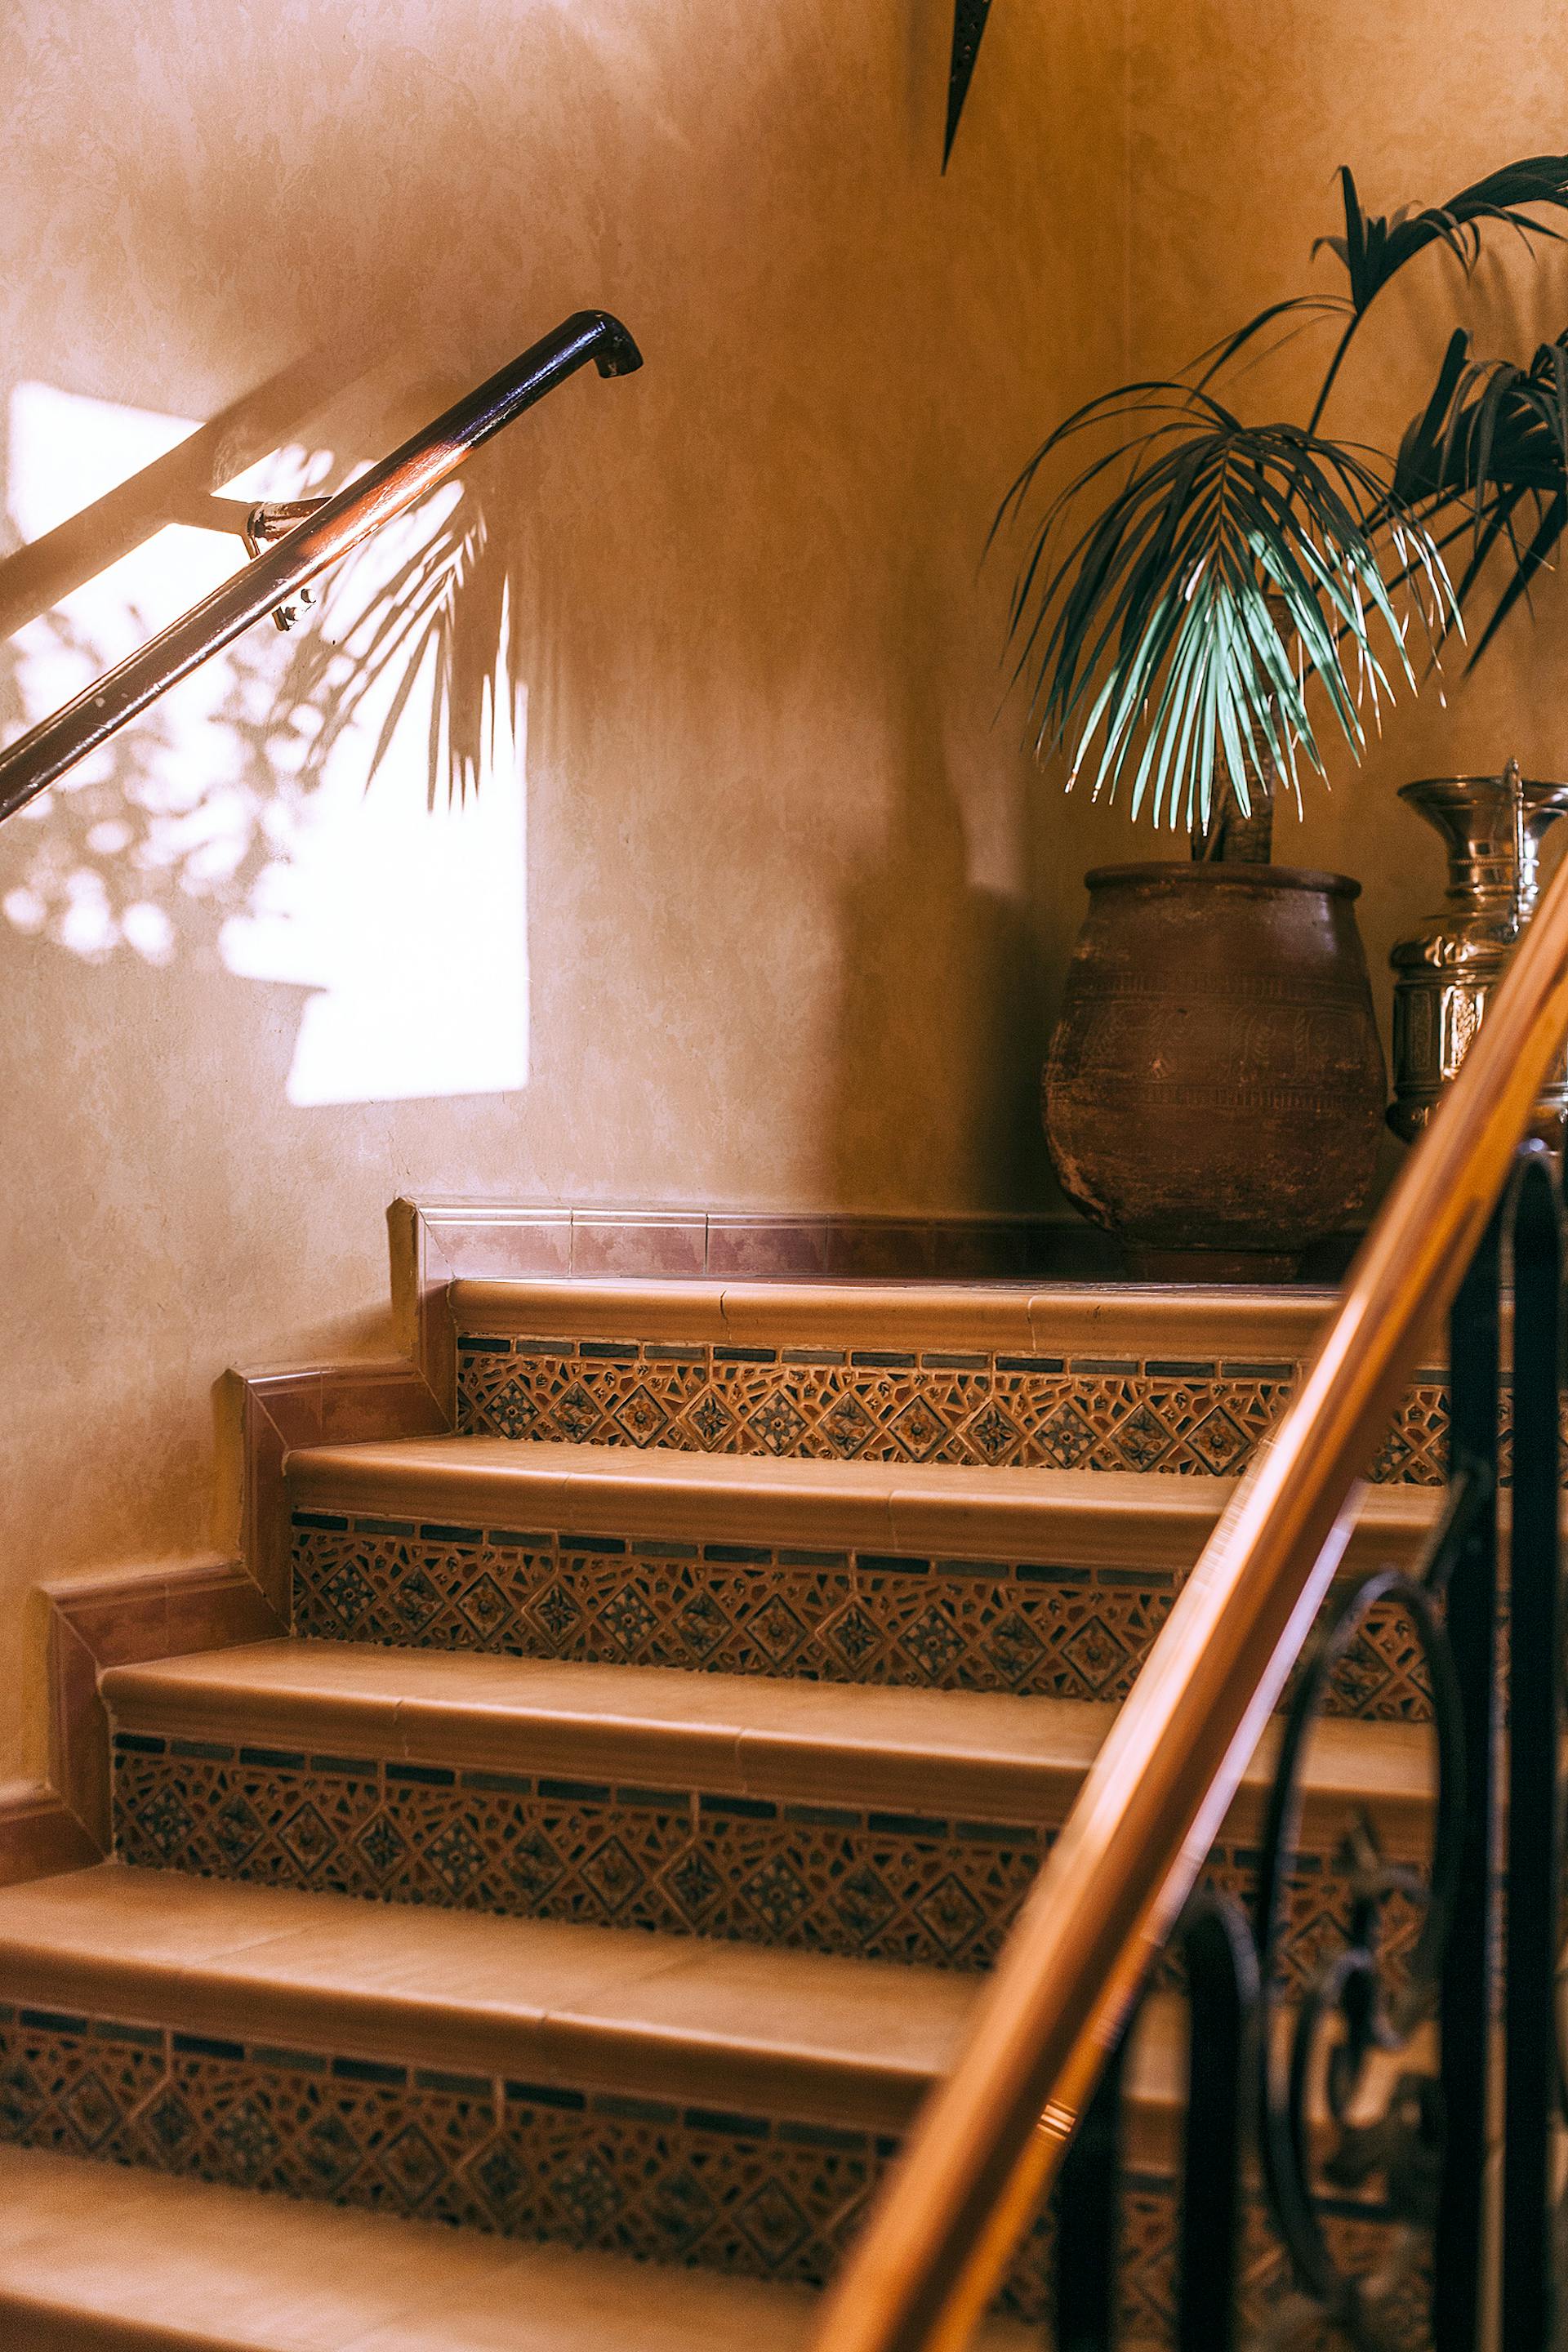 Un escalier en pierre de couleur brune dans une maison | Source : Pexels